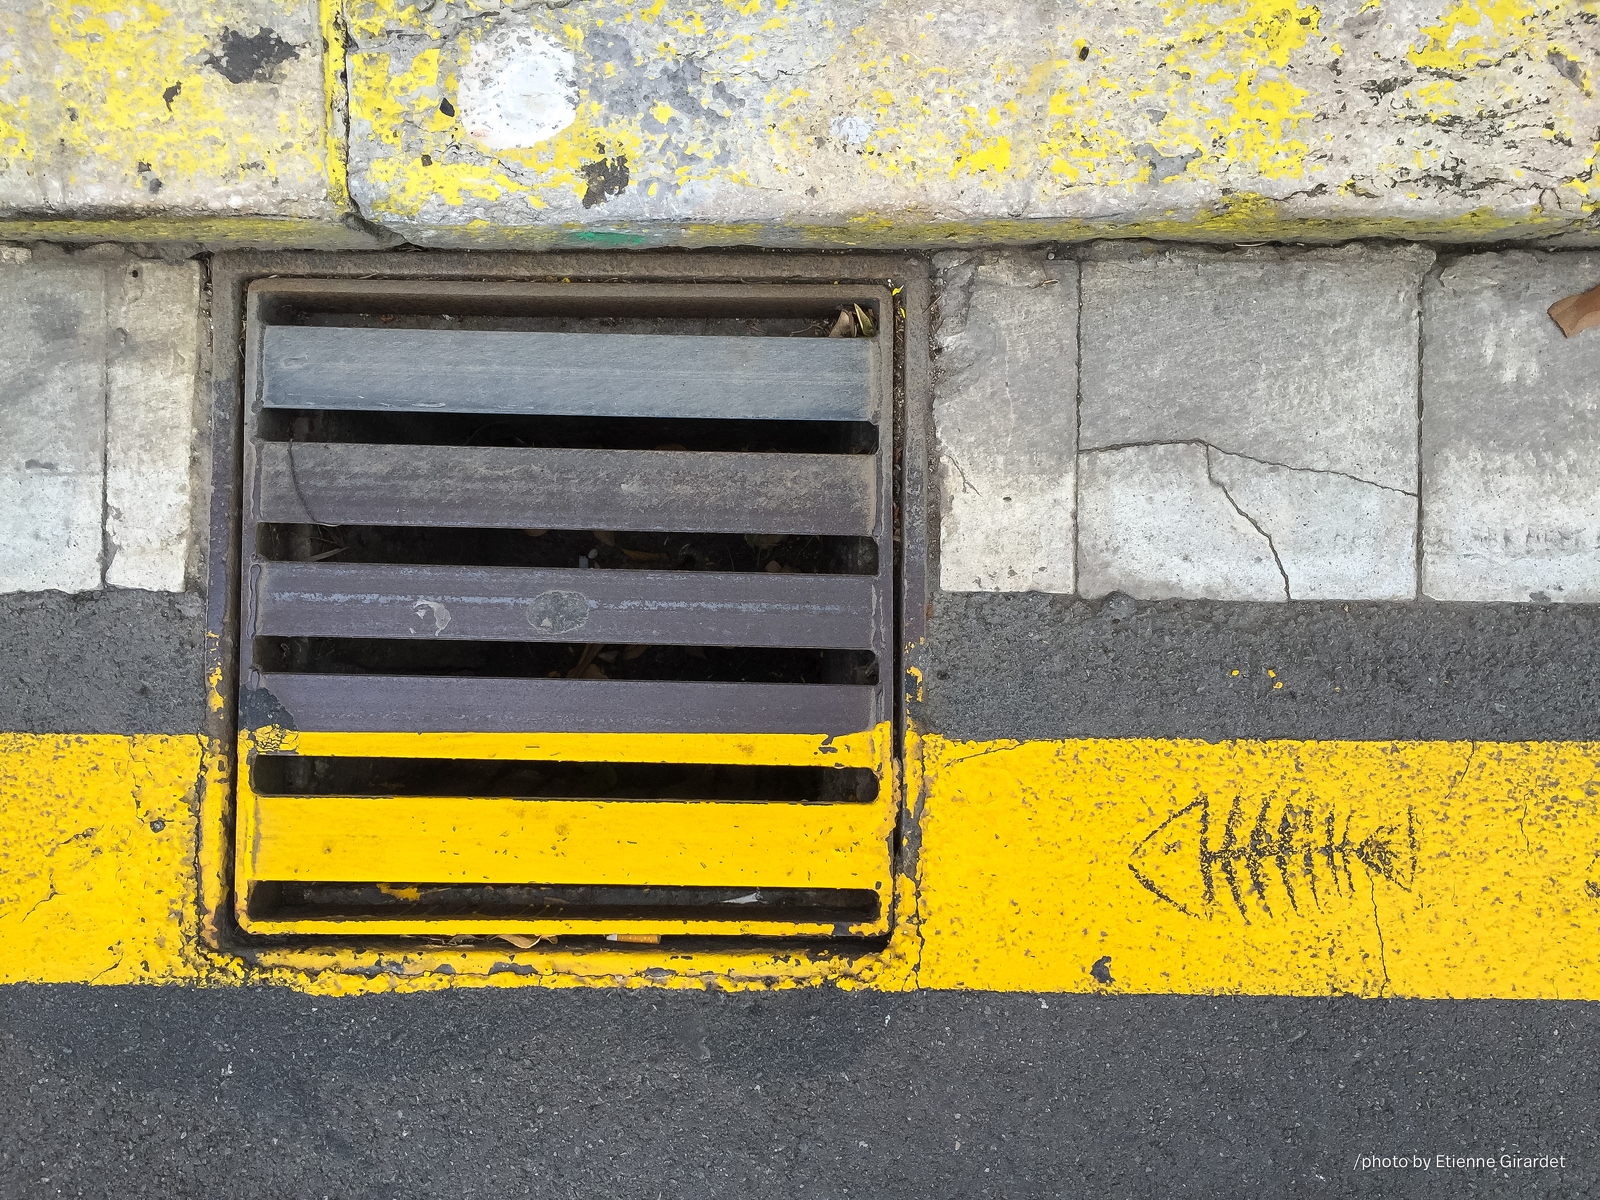 201603_30_IMG_8860-manhole-cover--by-E-Girardet.jpg